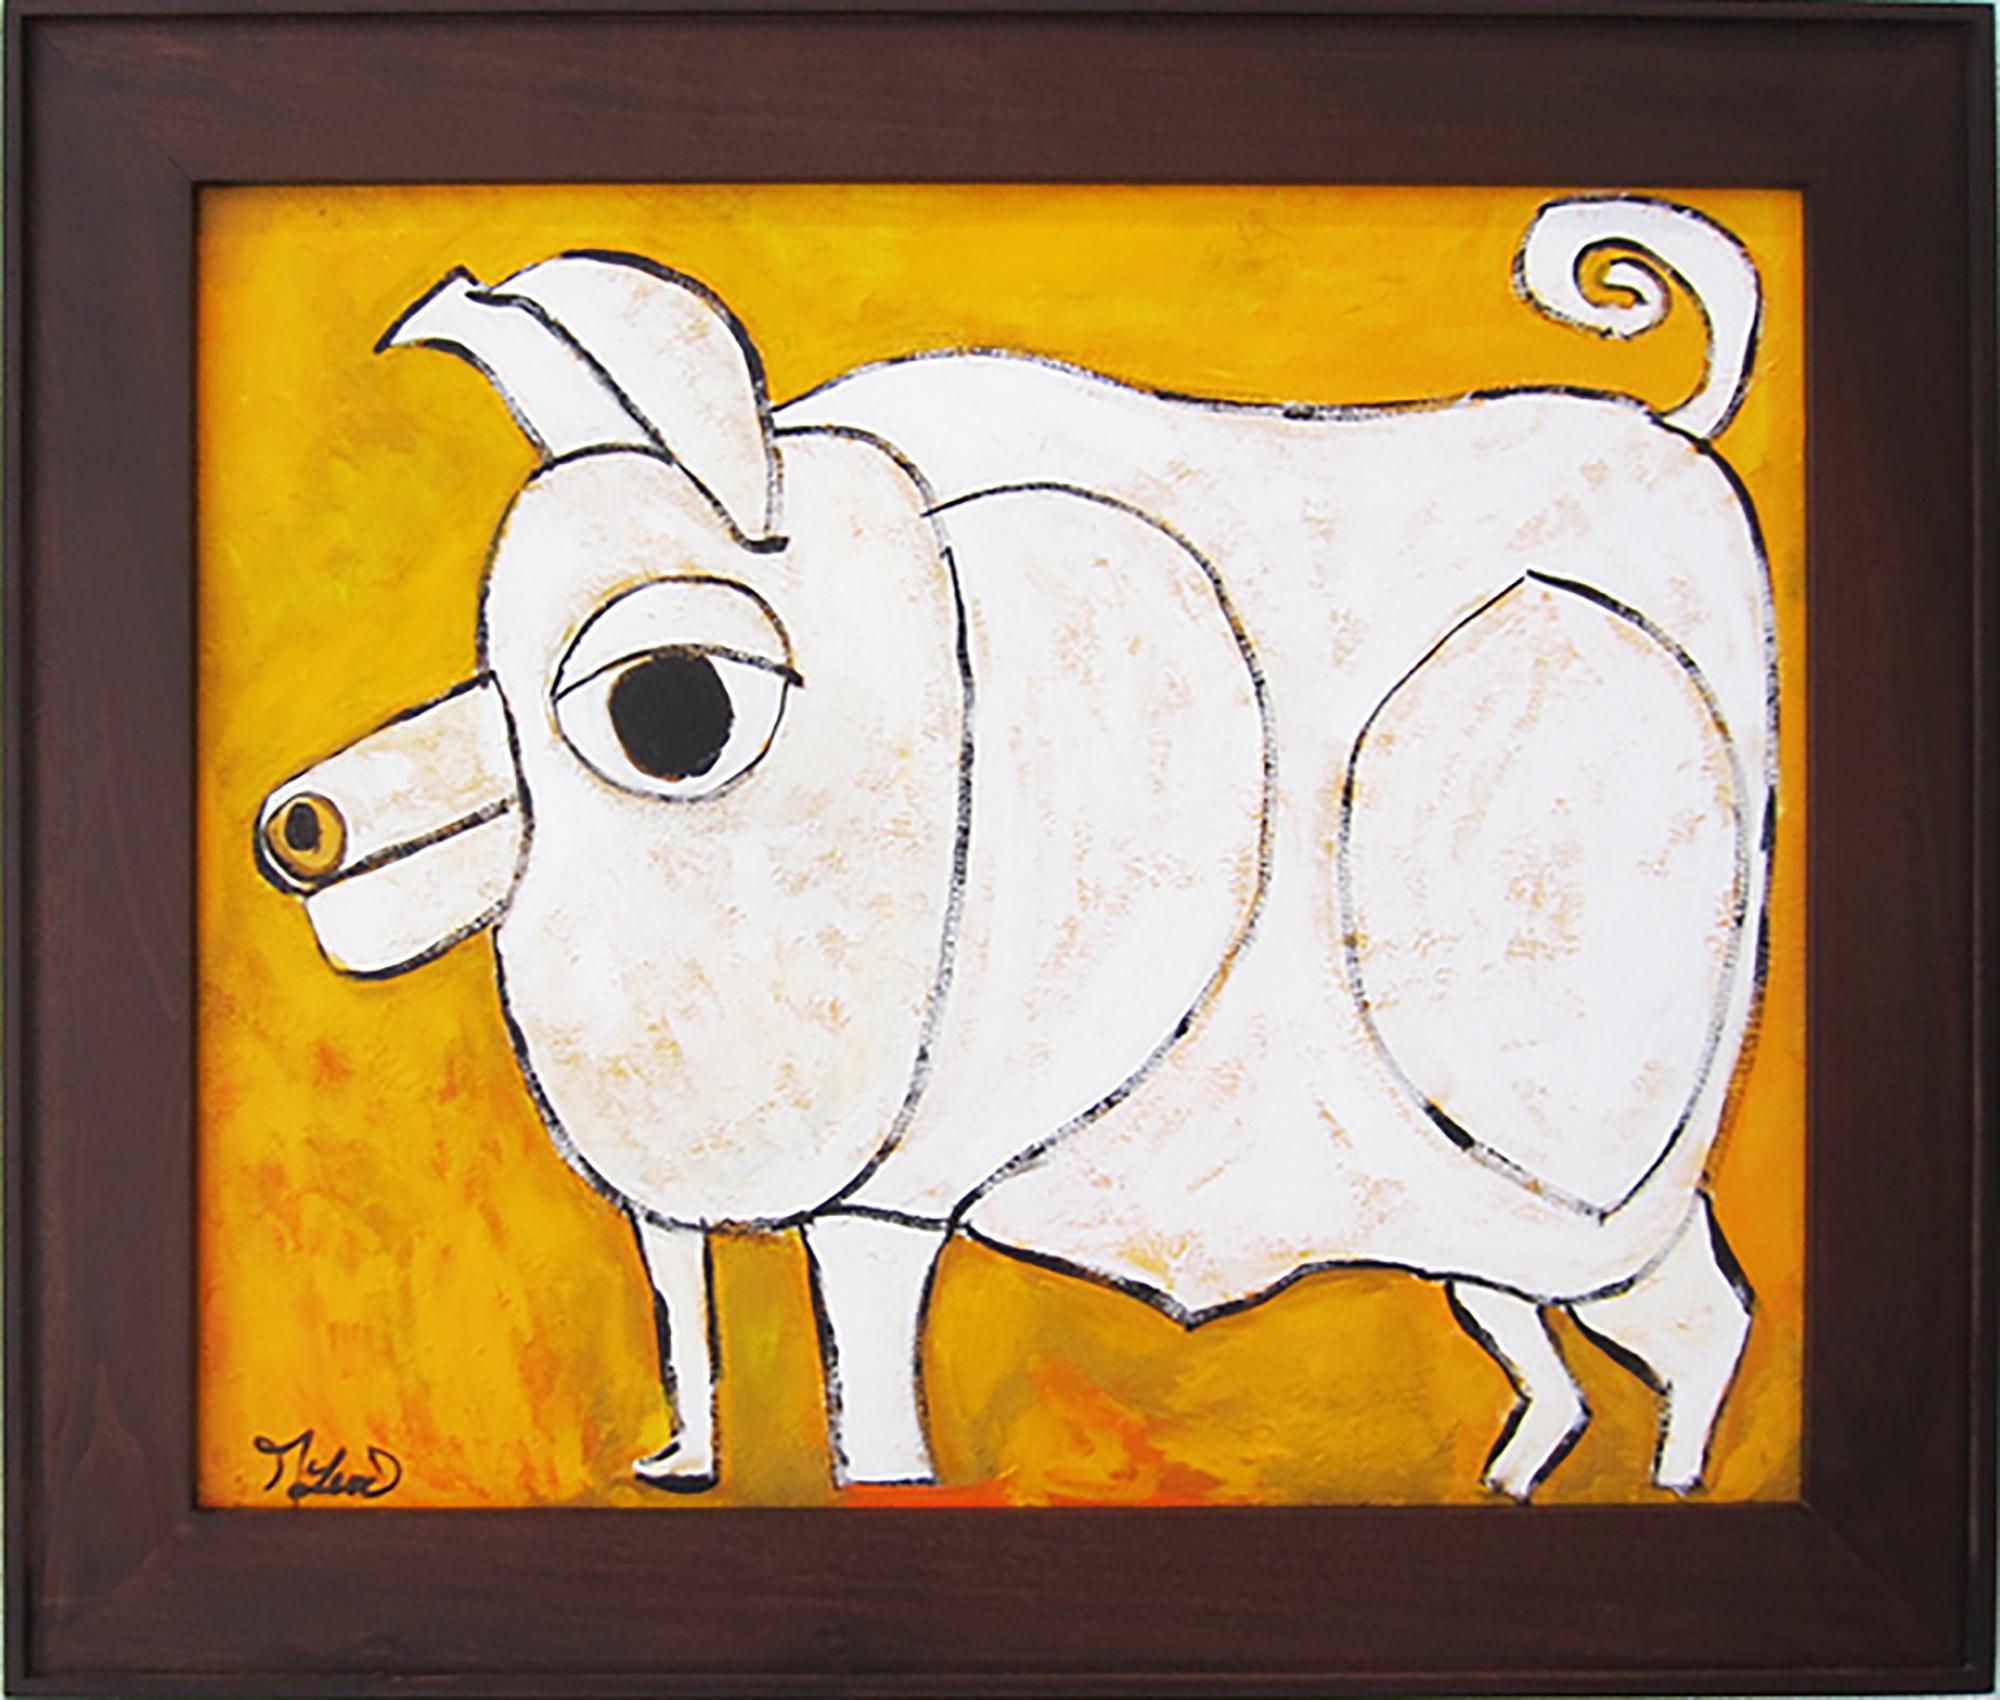 Melinda McLeod Animal Painting - "Tulip the Pig"